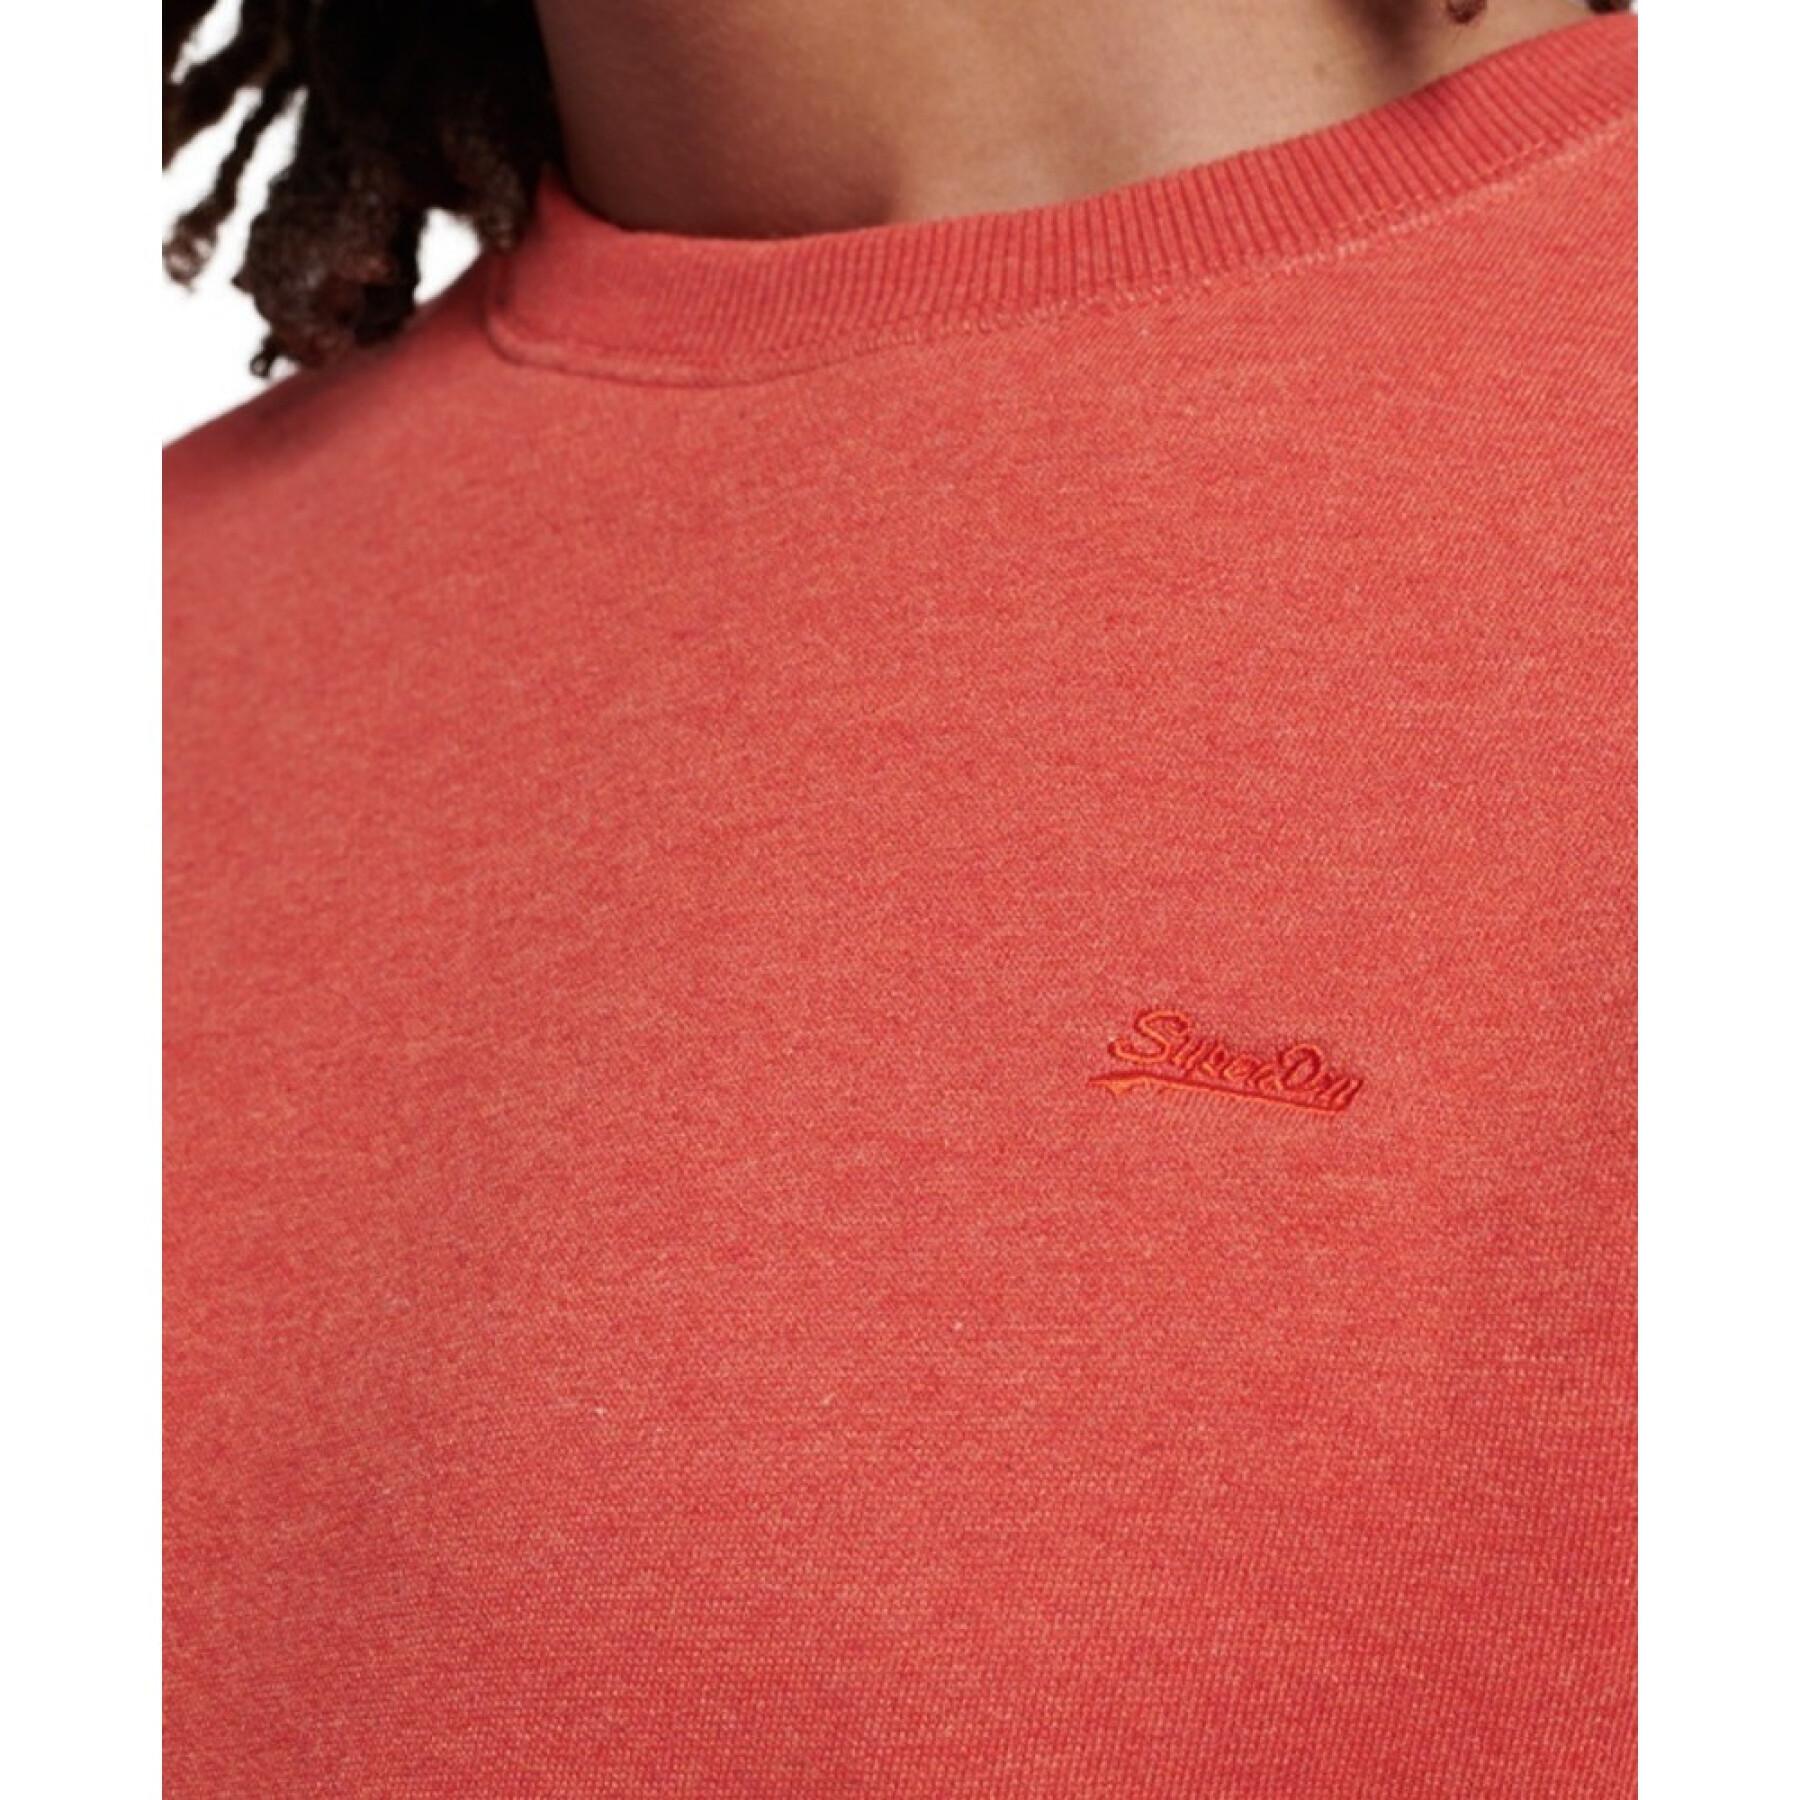 Sweatshirt cuello redondo bordado Superdry Vintage Logo